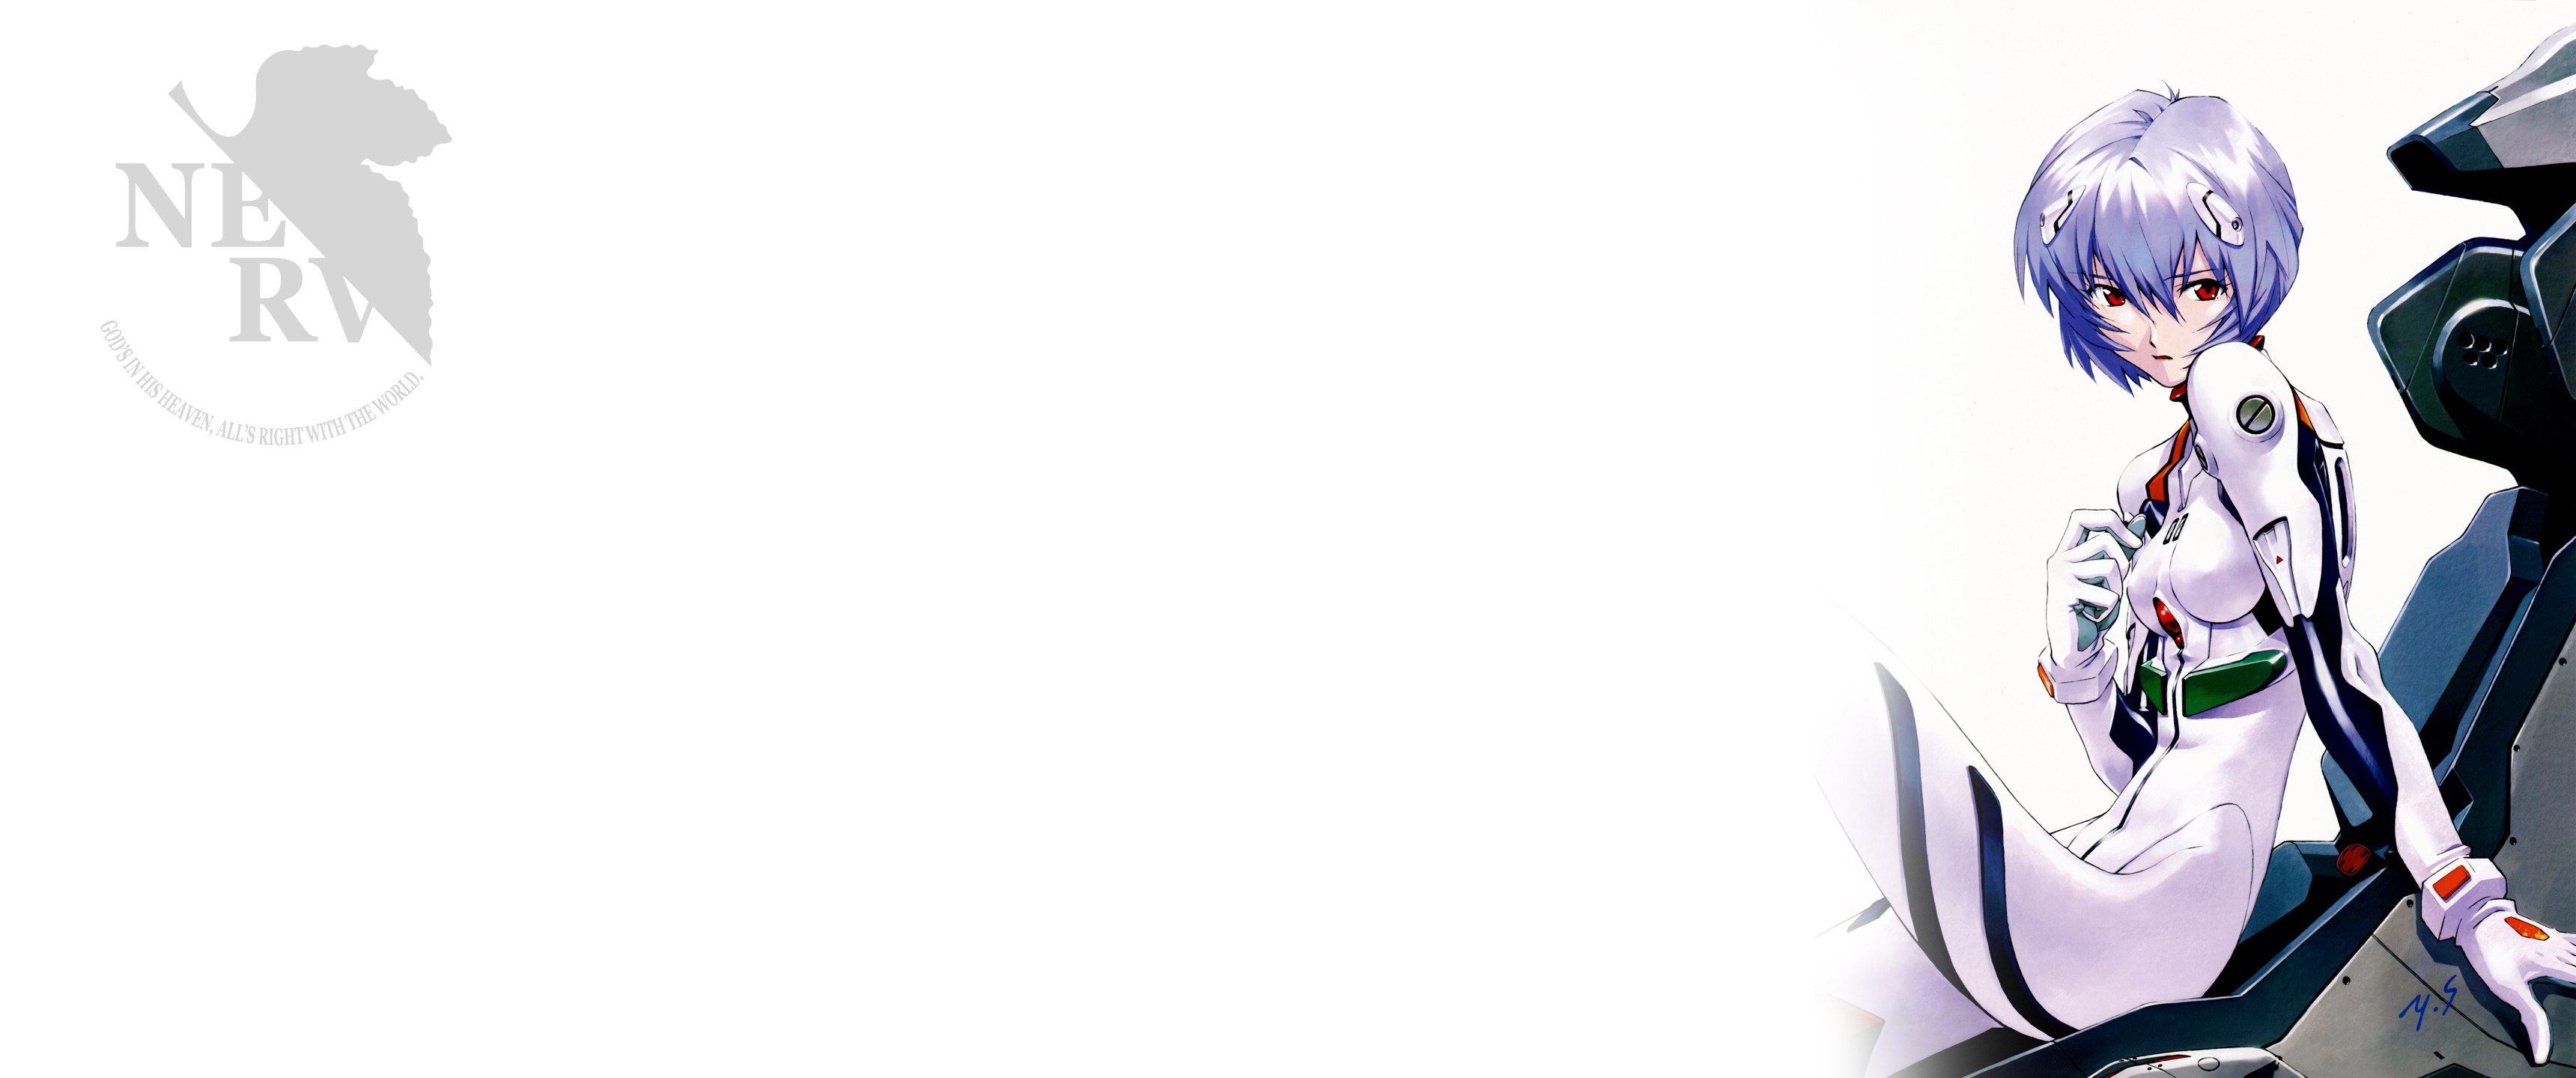 Neon Genesis Evangelion - bộ Anime lừng danh với nội dung đậm chất tâm lý nhân vật và hình ảnh độc đáo, đánh dấu một bước ngoặt quan trọng trong lịch sử Anime. Được xem là tác phẩm điện ảnh ấn tượng nhất của Nhật Bản, Neon Genesis Evangelion quả không phụ sự kì vọng của khán giả. Hãy bấm vào hình ảnh liên quan để hiểu thêm về cái đẹp khác biệt của bộ phim này.